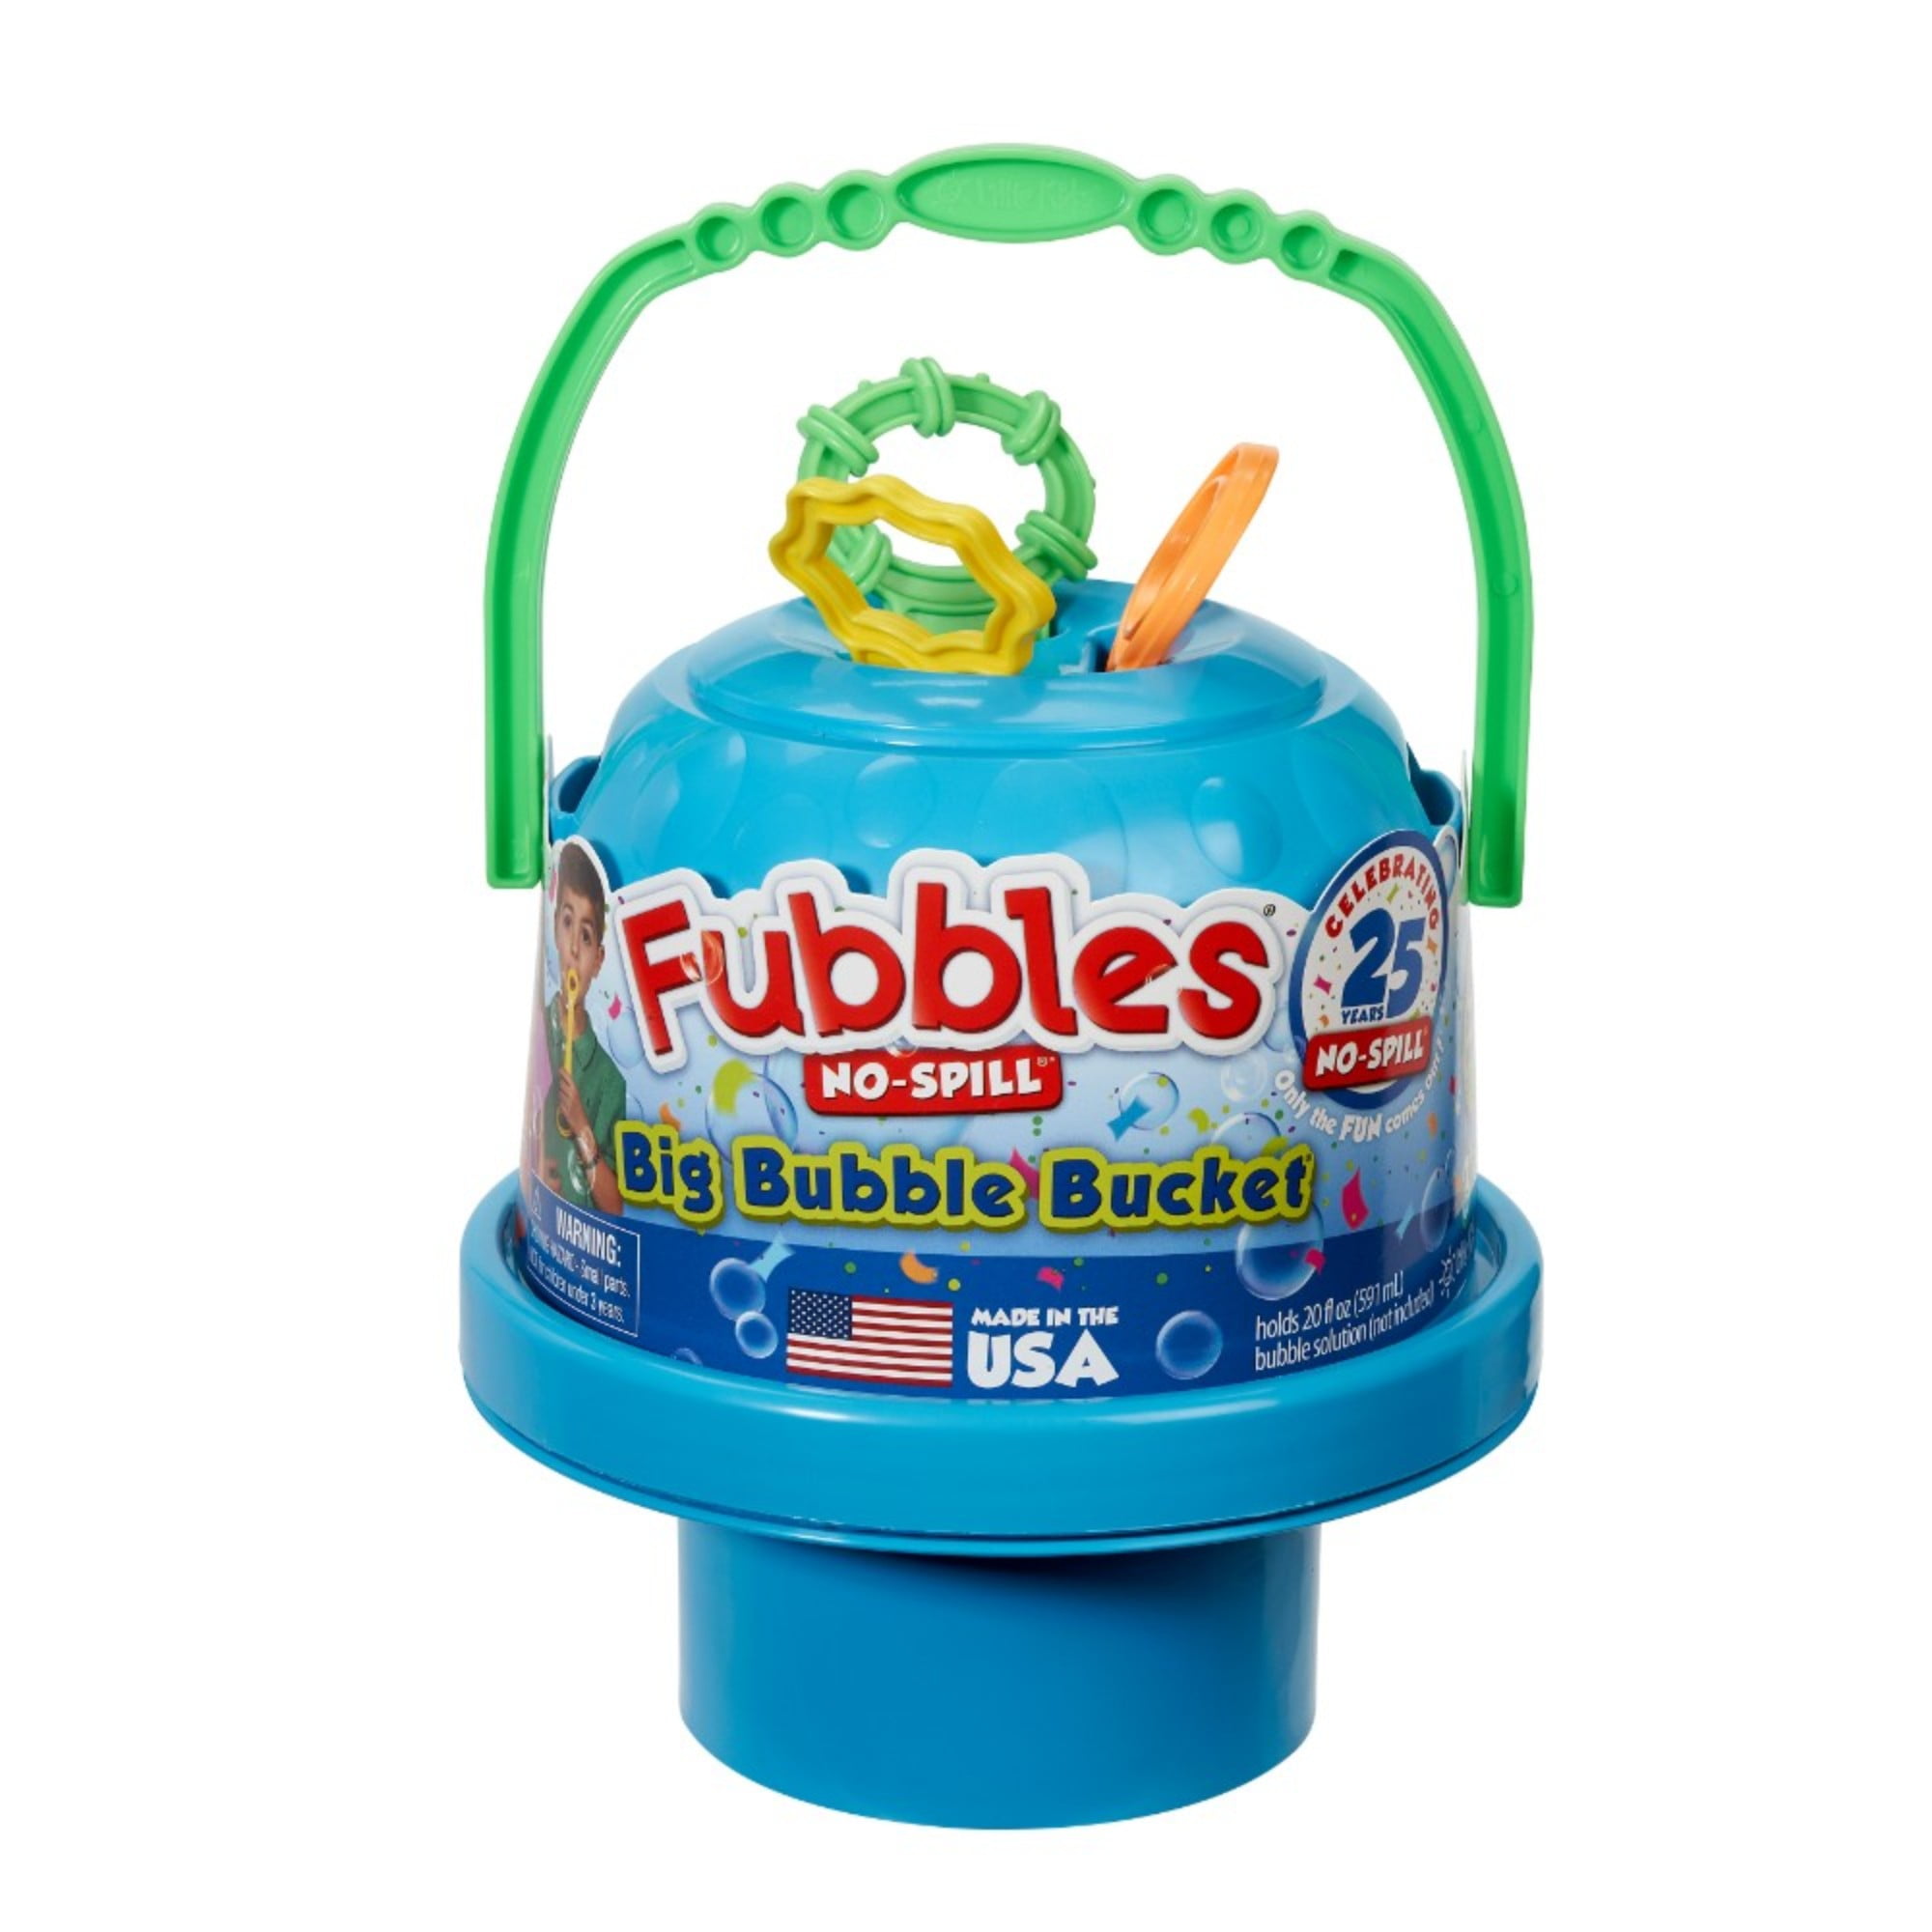 NEW! Fubbles No-Spill Big Bubble Bucket 8 Fl oz Blue & Green Bubble Dispenser 